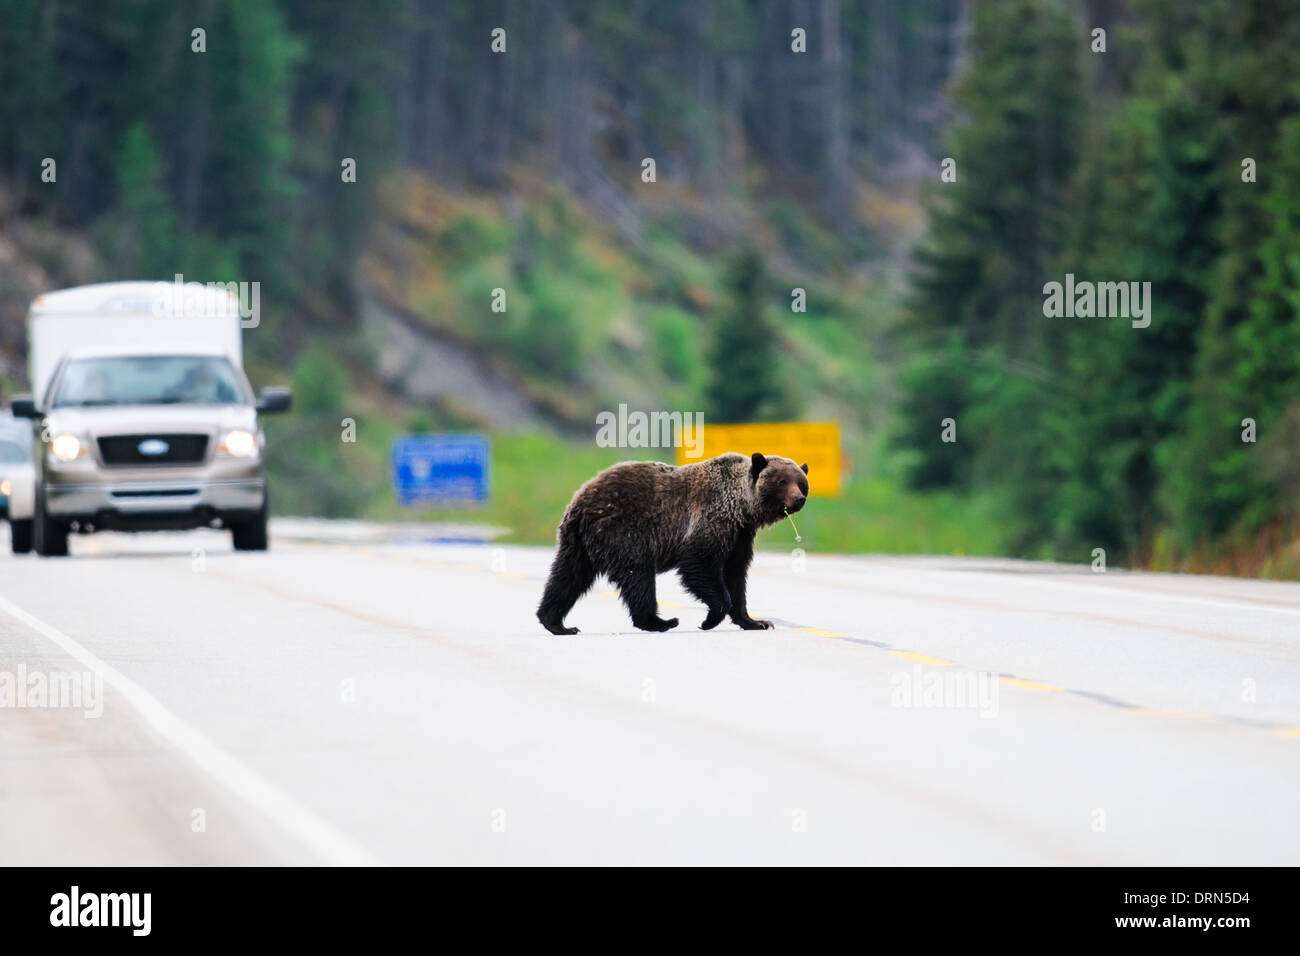 Grizzly Bear adultos cruzando una carretera, el Parque Nacional de Jasper, Alberta, Canadá Foto de stock